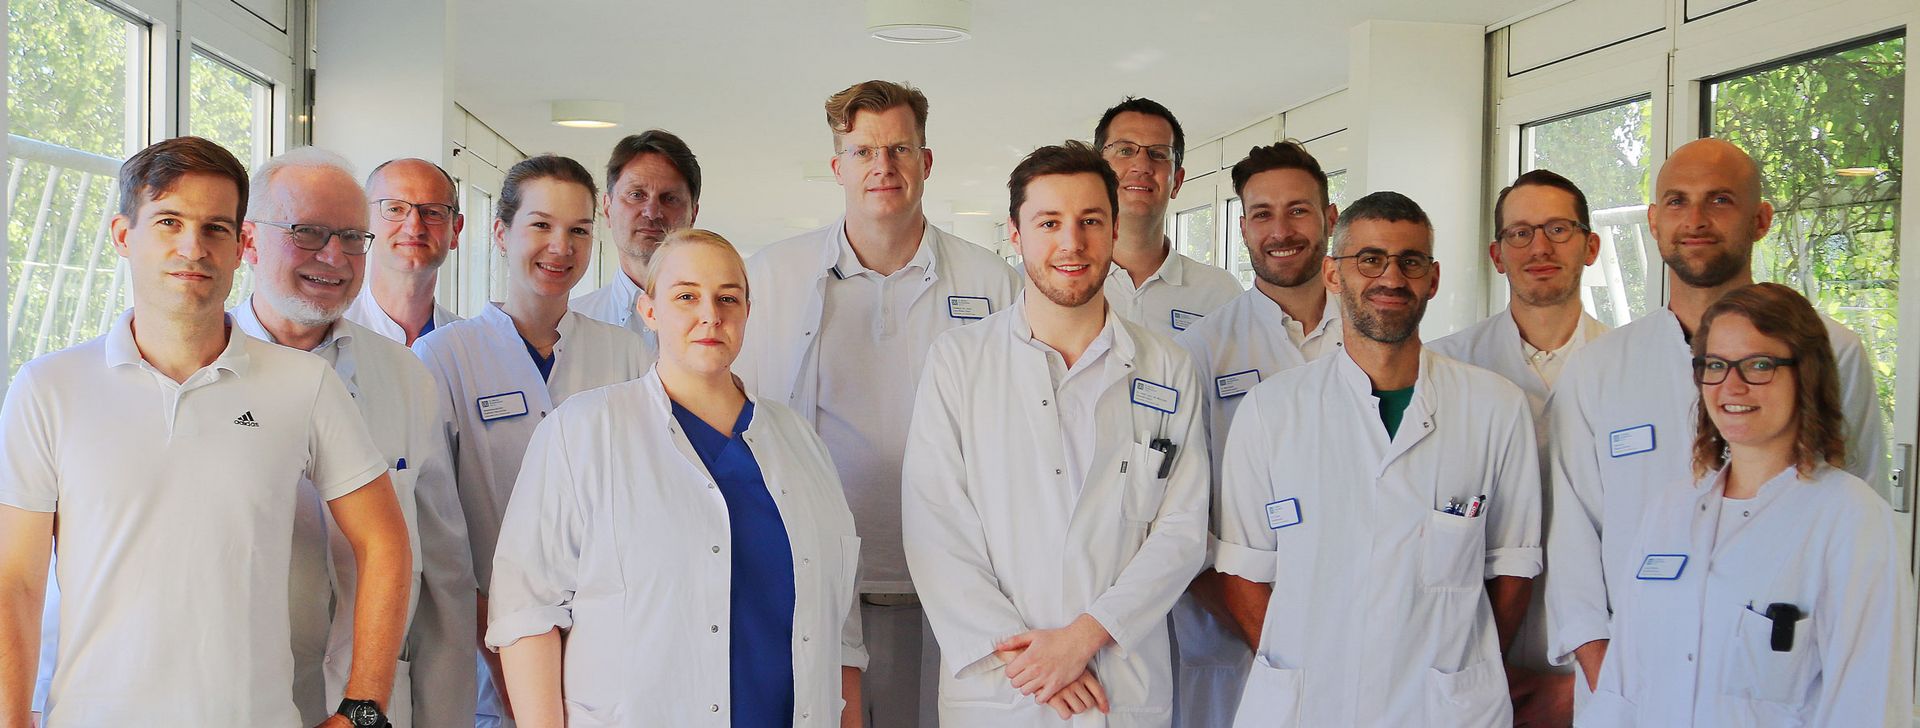 Das Team der Abteilung Orthopädie und Unfallchirurgie im Sankt Marien-Krankenhaus Berlin